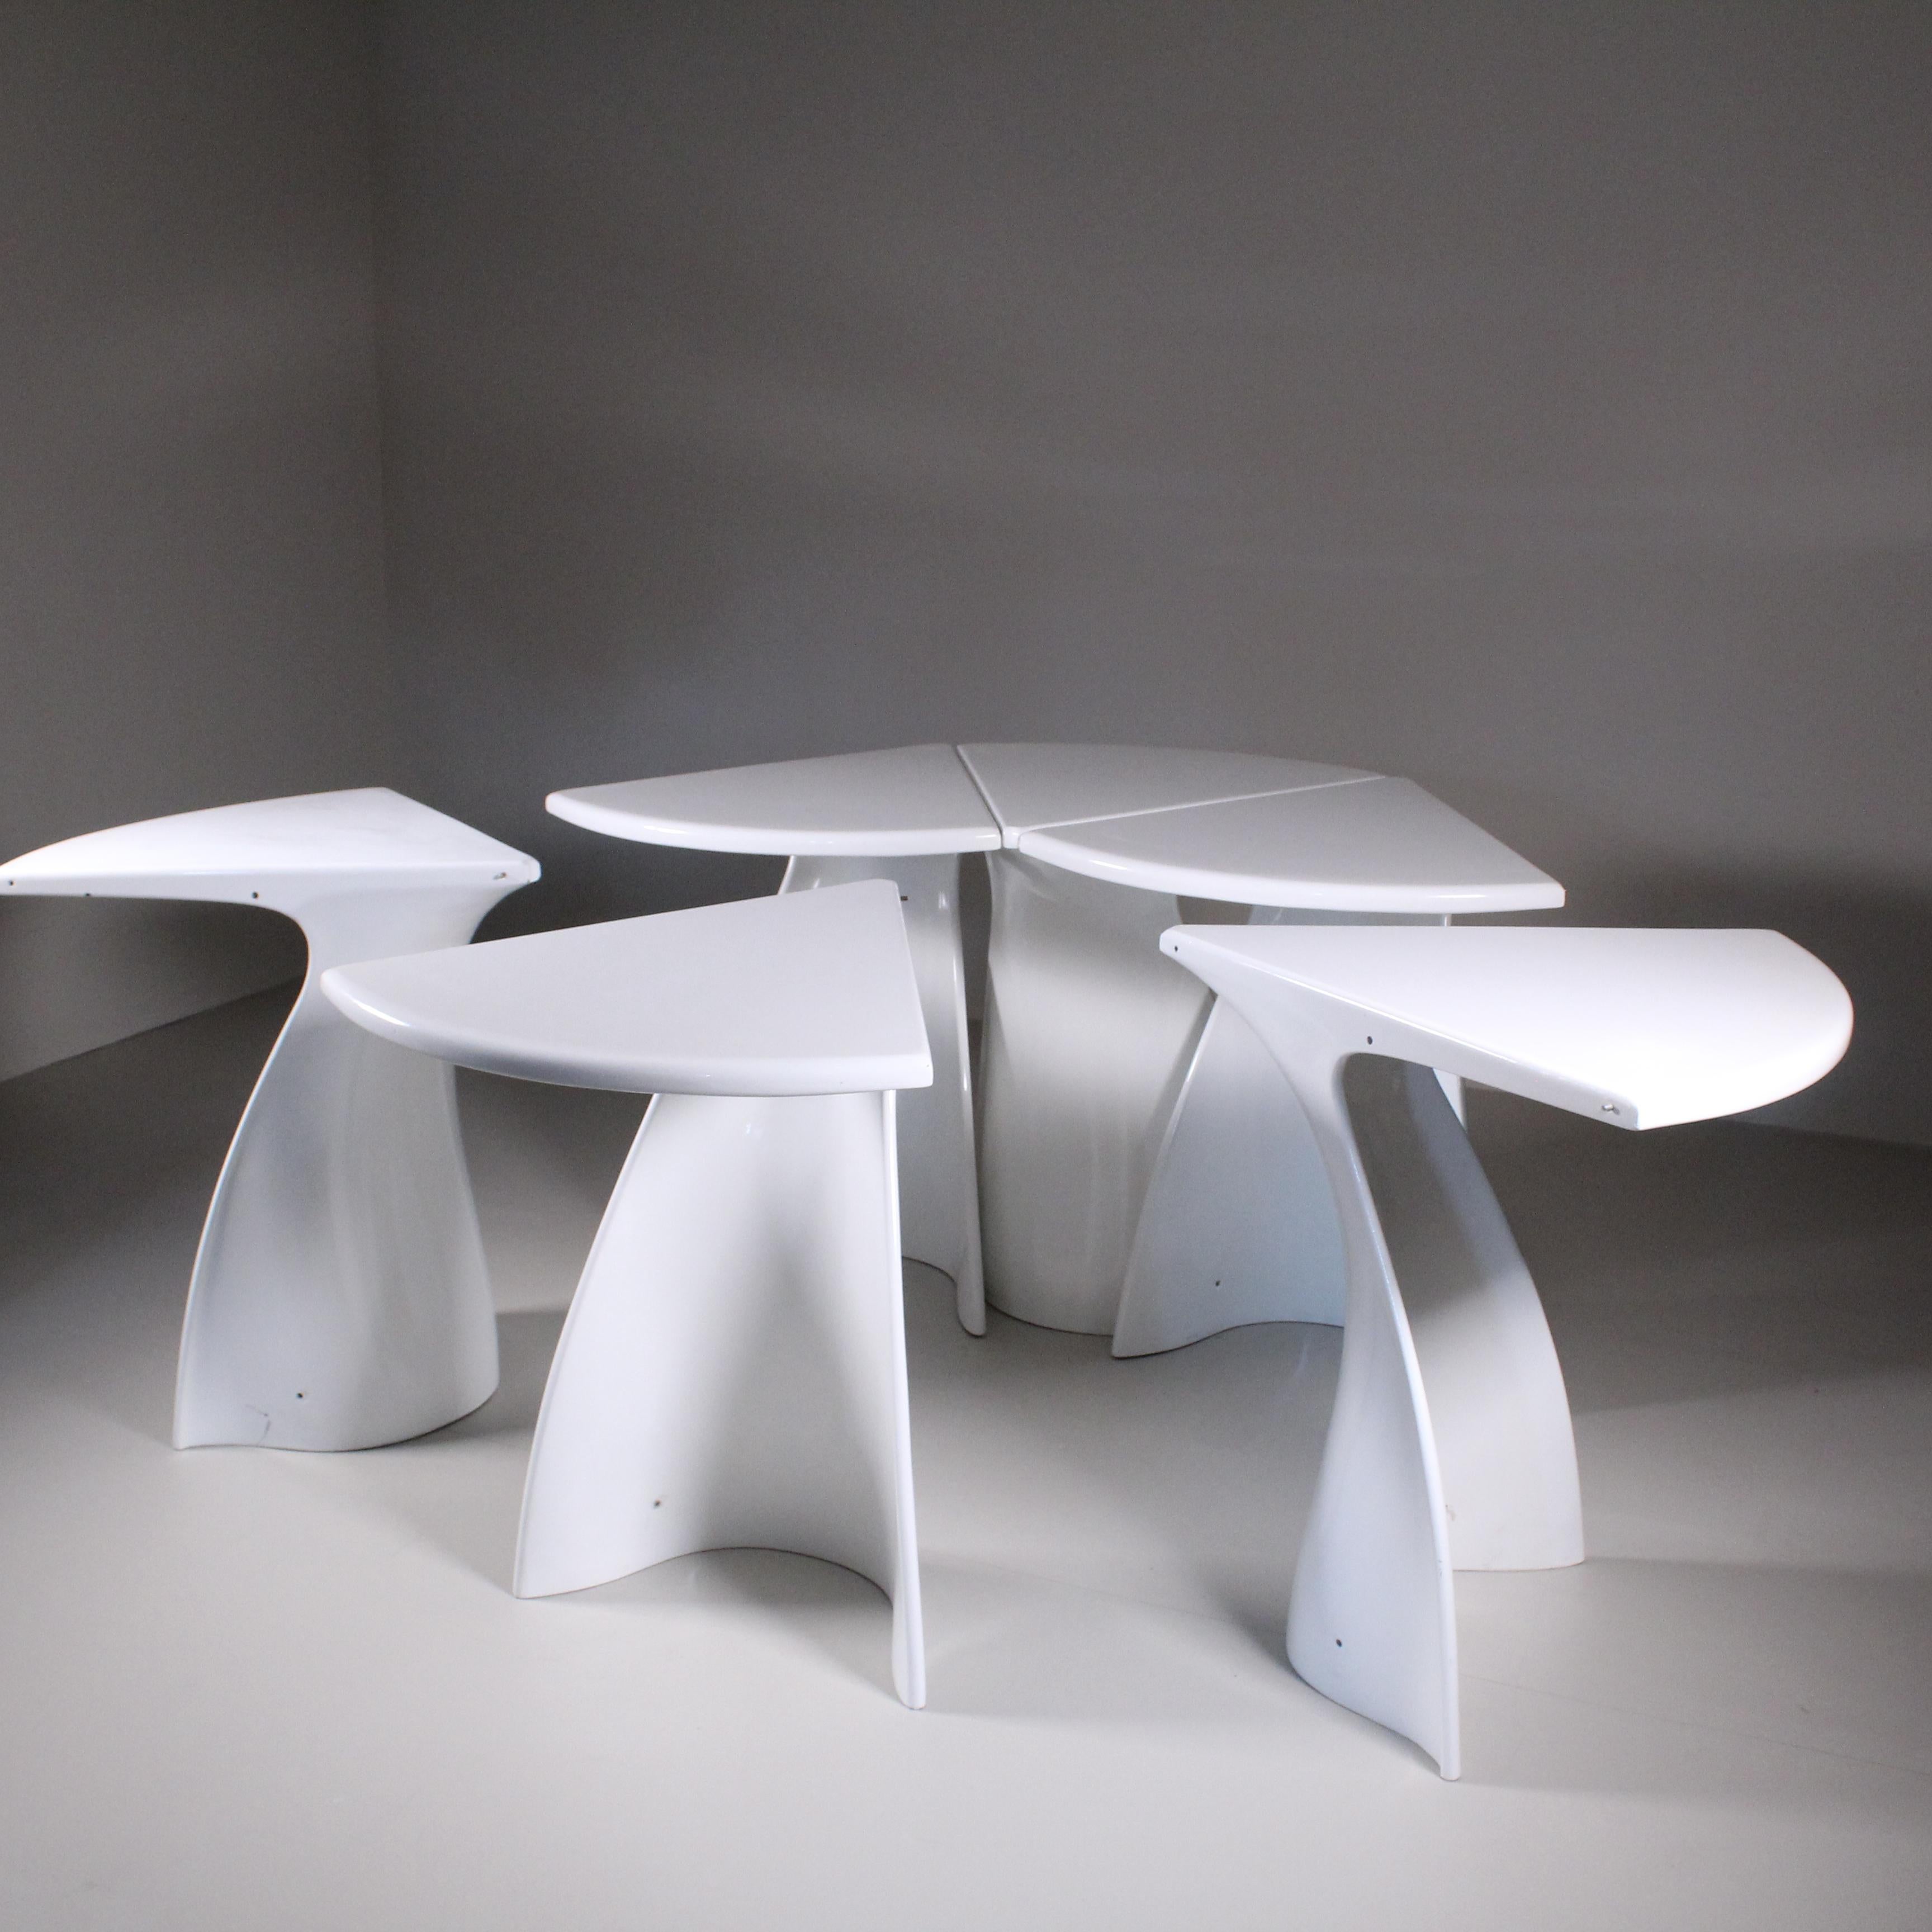 La force de cette table réside dans sa modularité. Fabio Lenci a conçu la table de manière à ce que ses sections puissent être facilement adaptées et combinées en fonction des besoins de l'espace et de l'utilisateur. Cette polyvalence permet à la